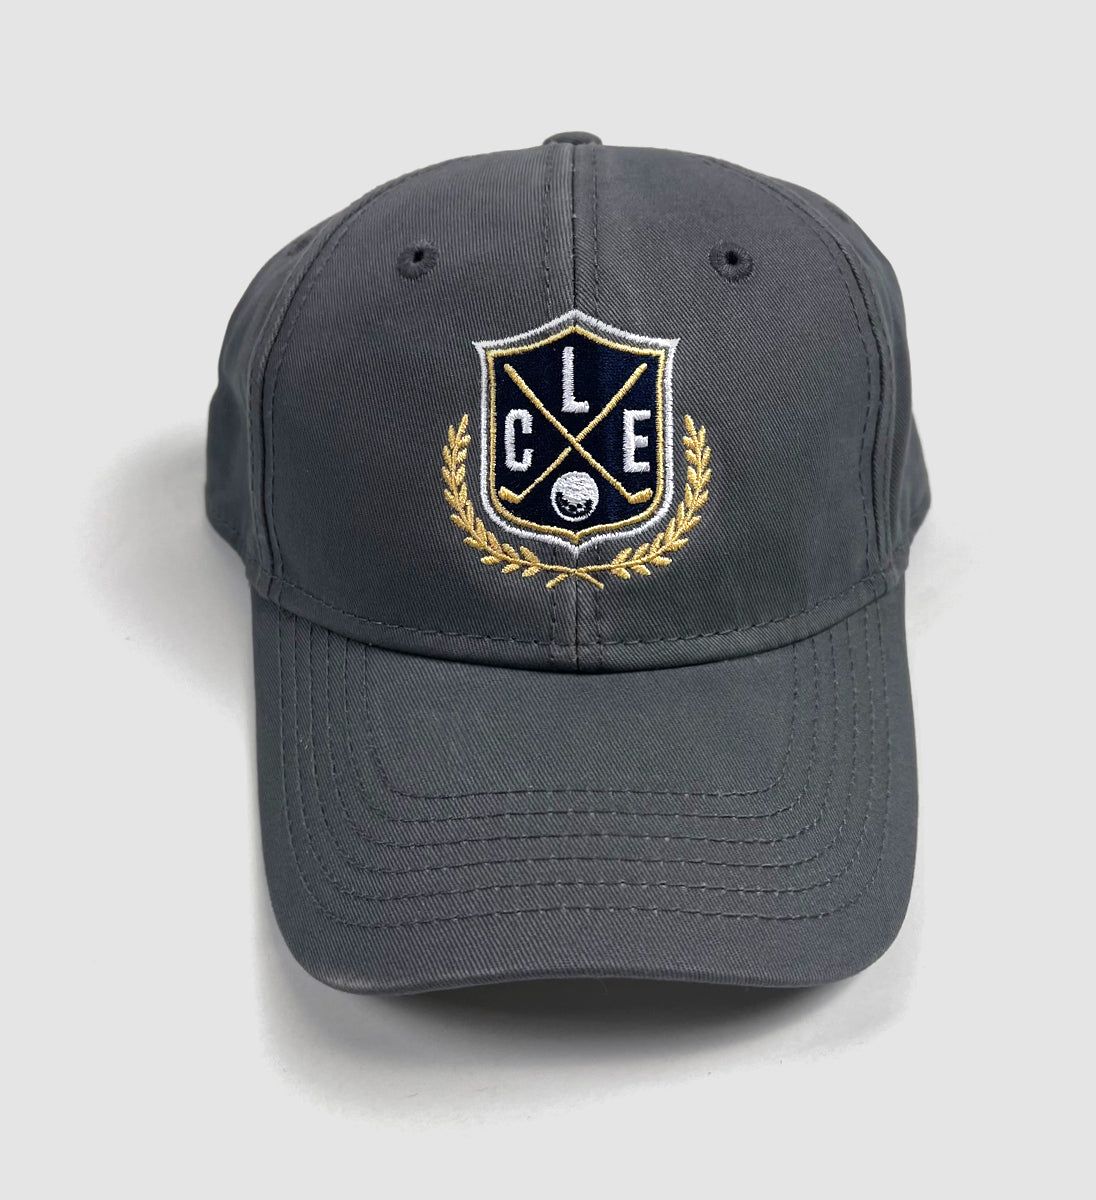 Cleveland Golf Crest Dad Hat Grey